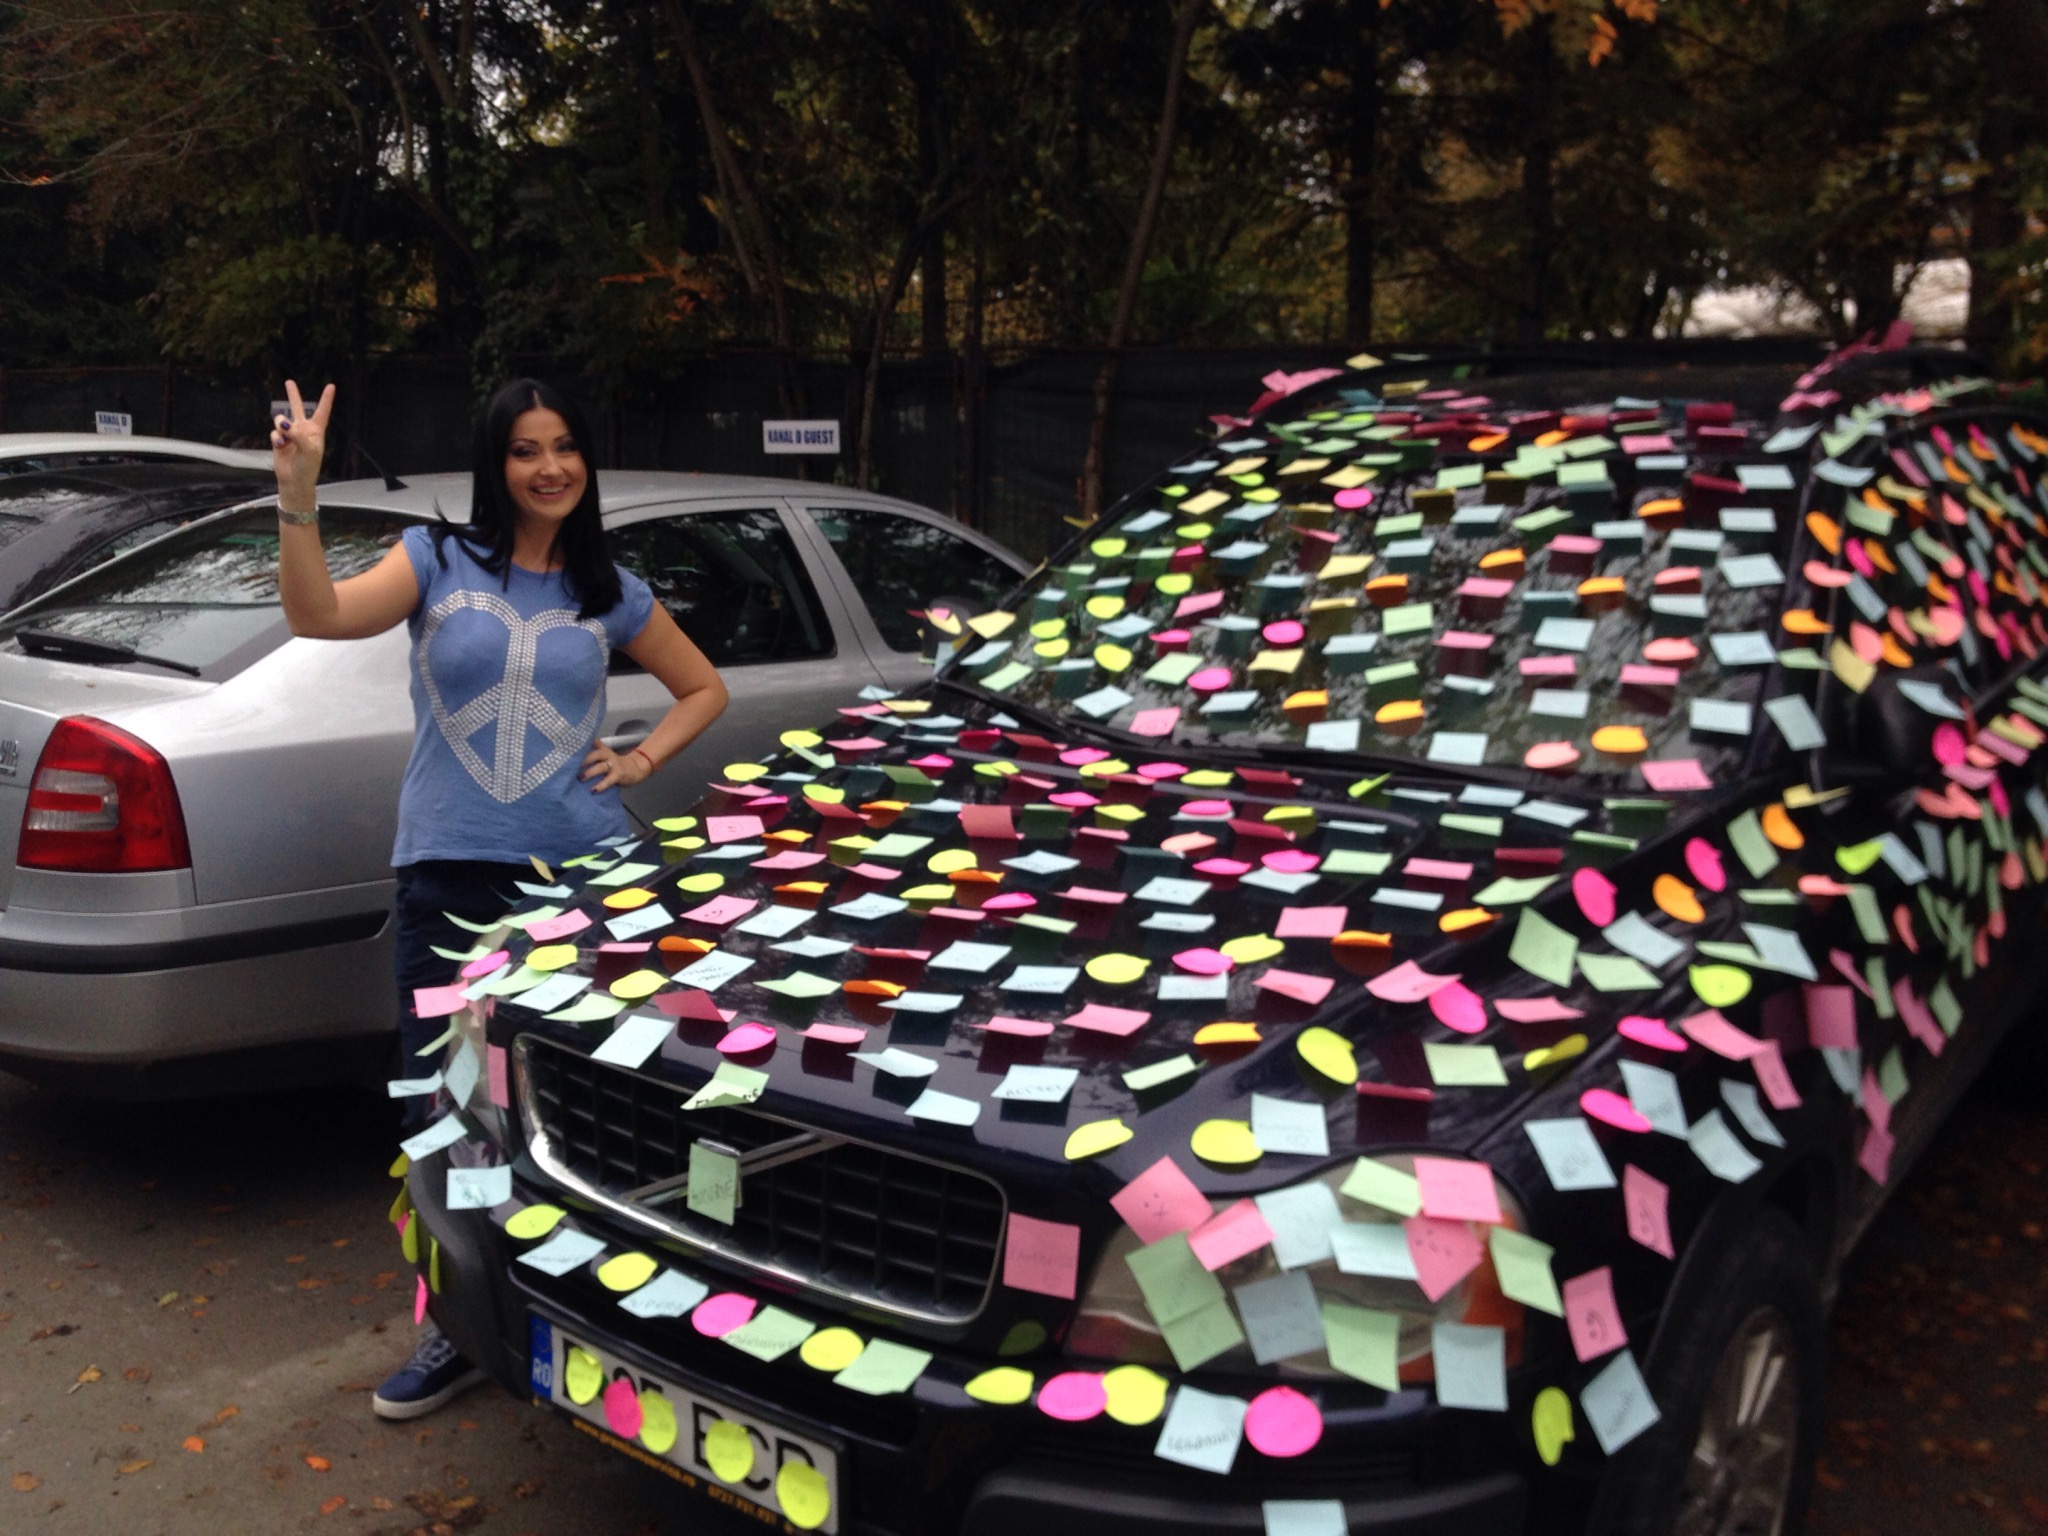 Cand a iesit din emisie, Gabriela Cristea si-a gasit masina impodobita cu biletele colorate